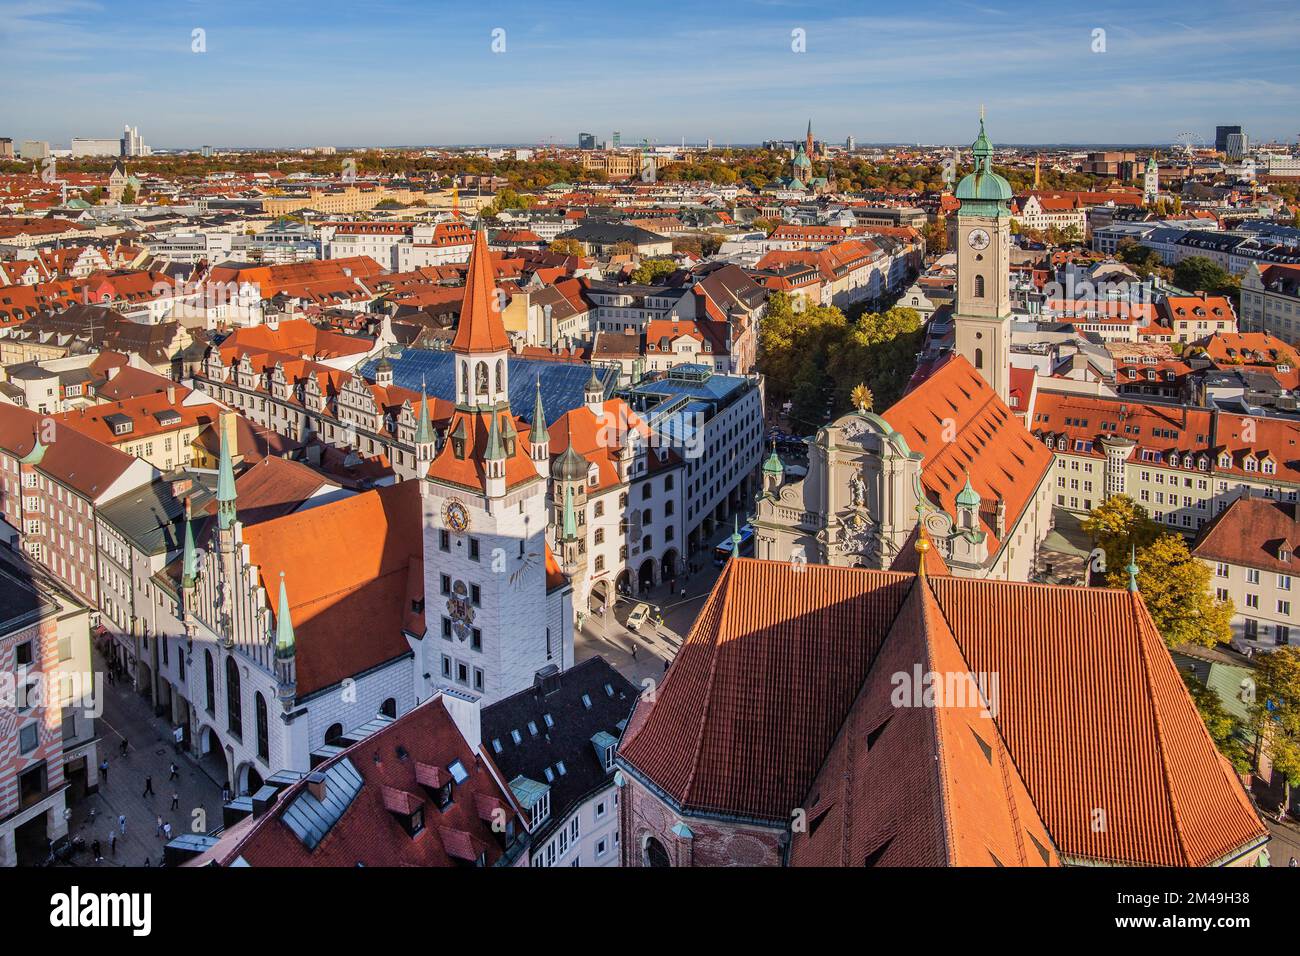 Blick auf die Altstadt mit Altstadthaus und Heiliger Geist, München, Oberbayern, Bayern, Deutschland Stockfoto